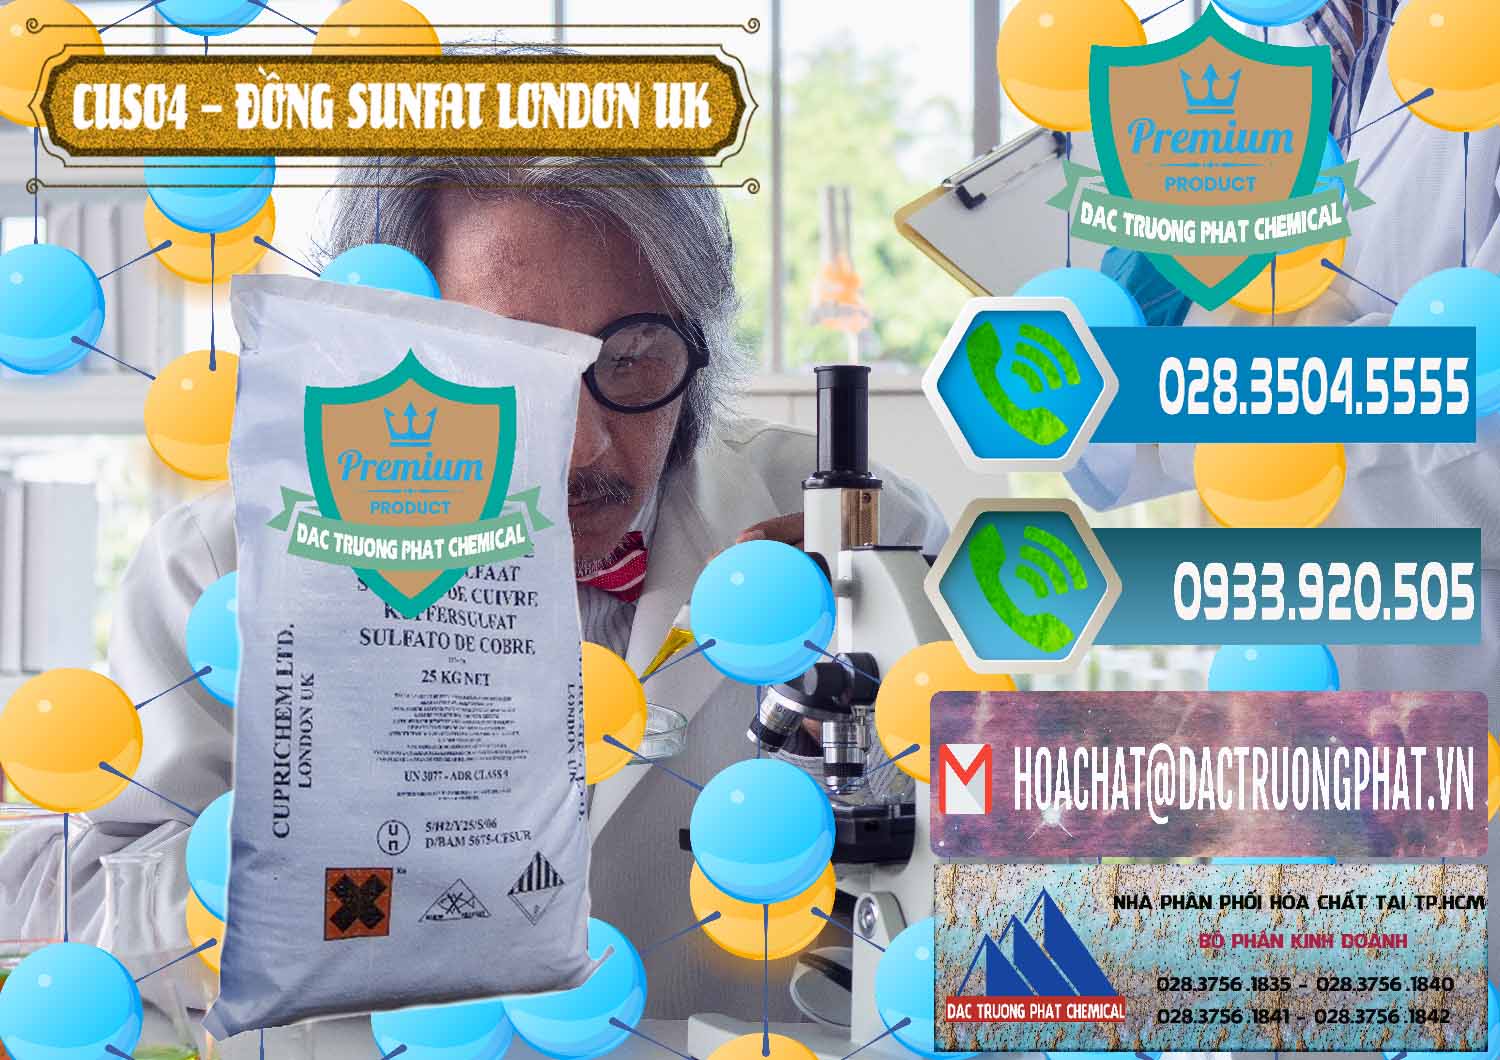 Chuyên bán - cung ứng CuSO4 – Đồng Sunfat Anh Uk Kingdoms - 0478 - Chuyên bán & phân phối hóa chất tại TP.HCM - congtyhoachat.net